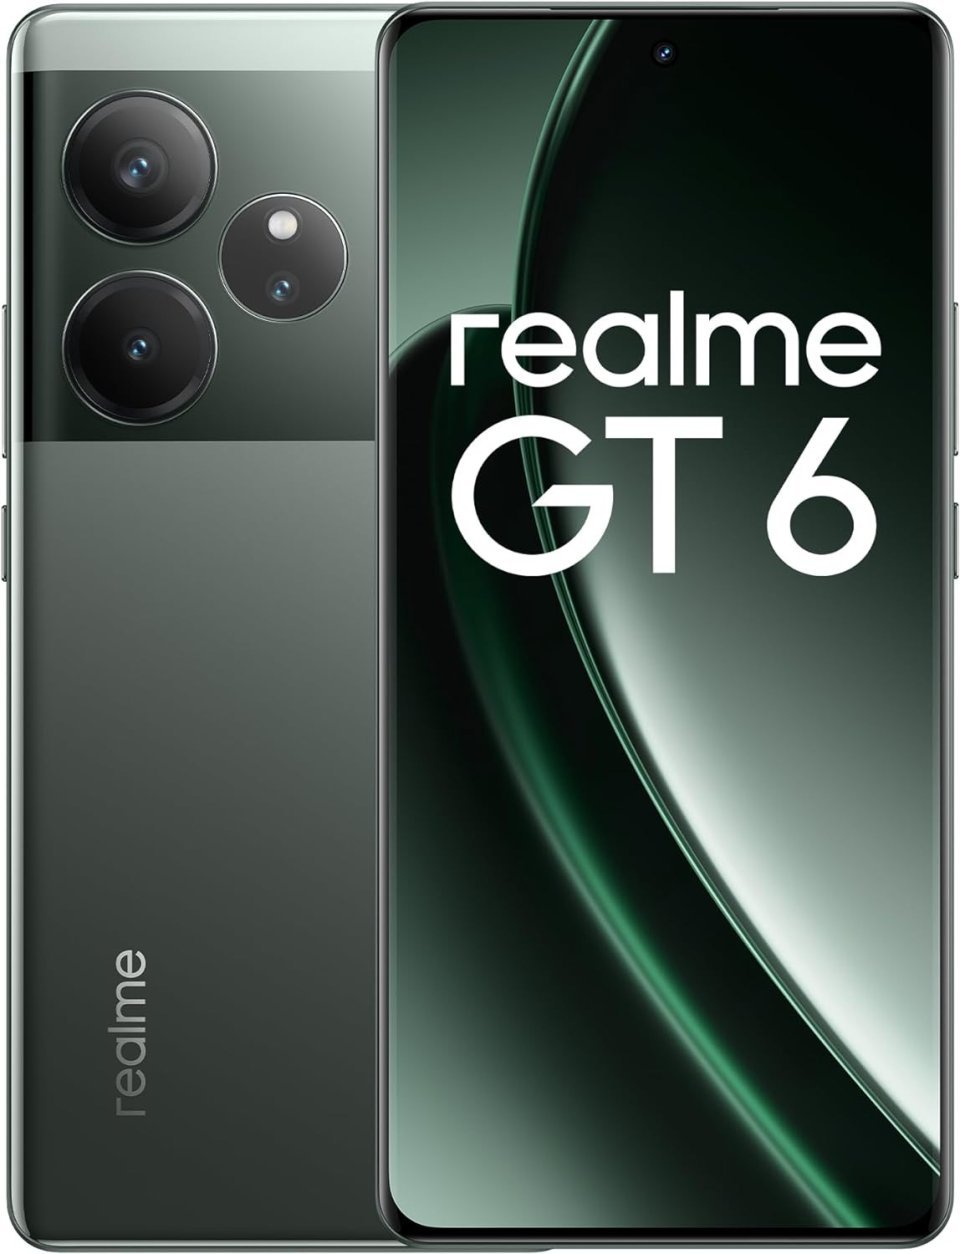 Điện thoại realme GT 6 (Ảnh: Internet)